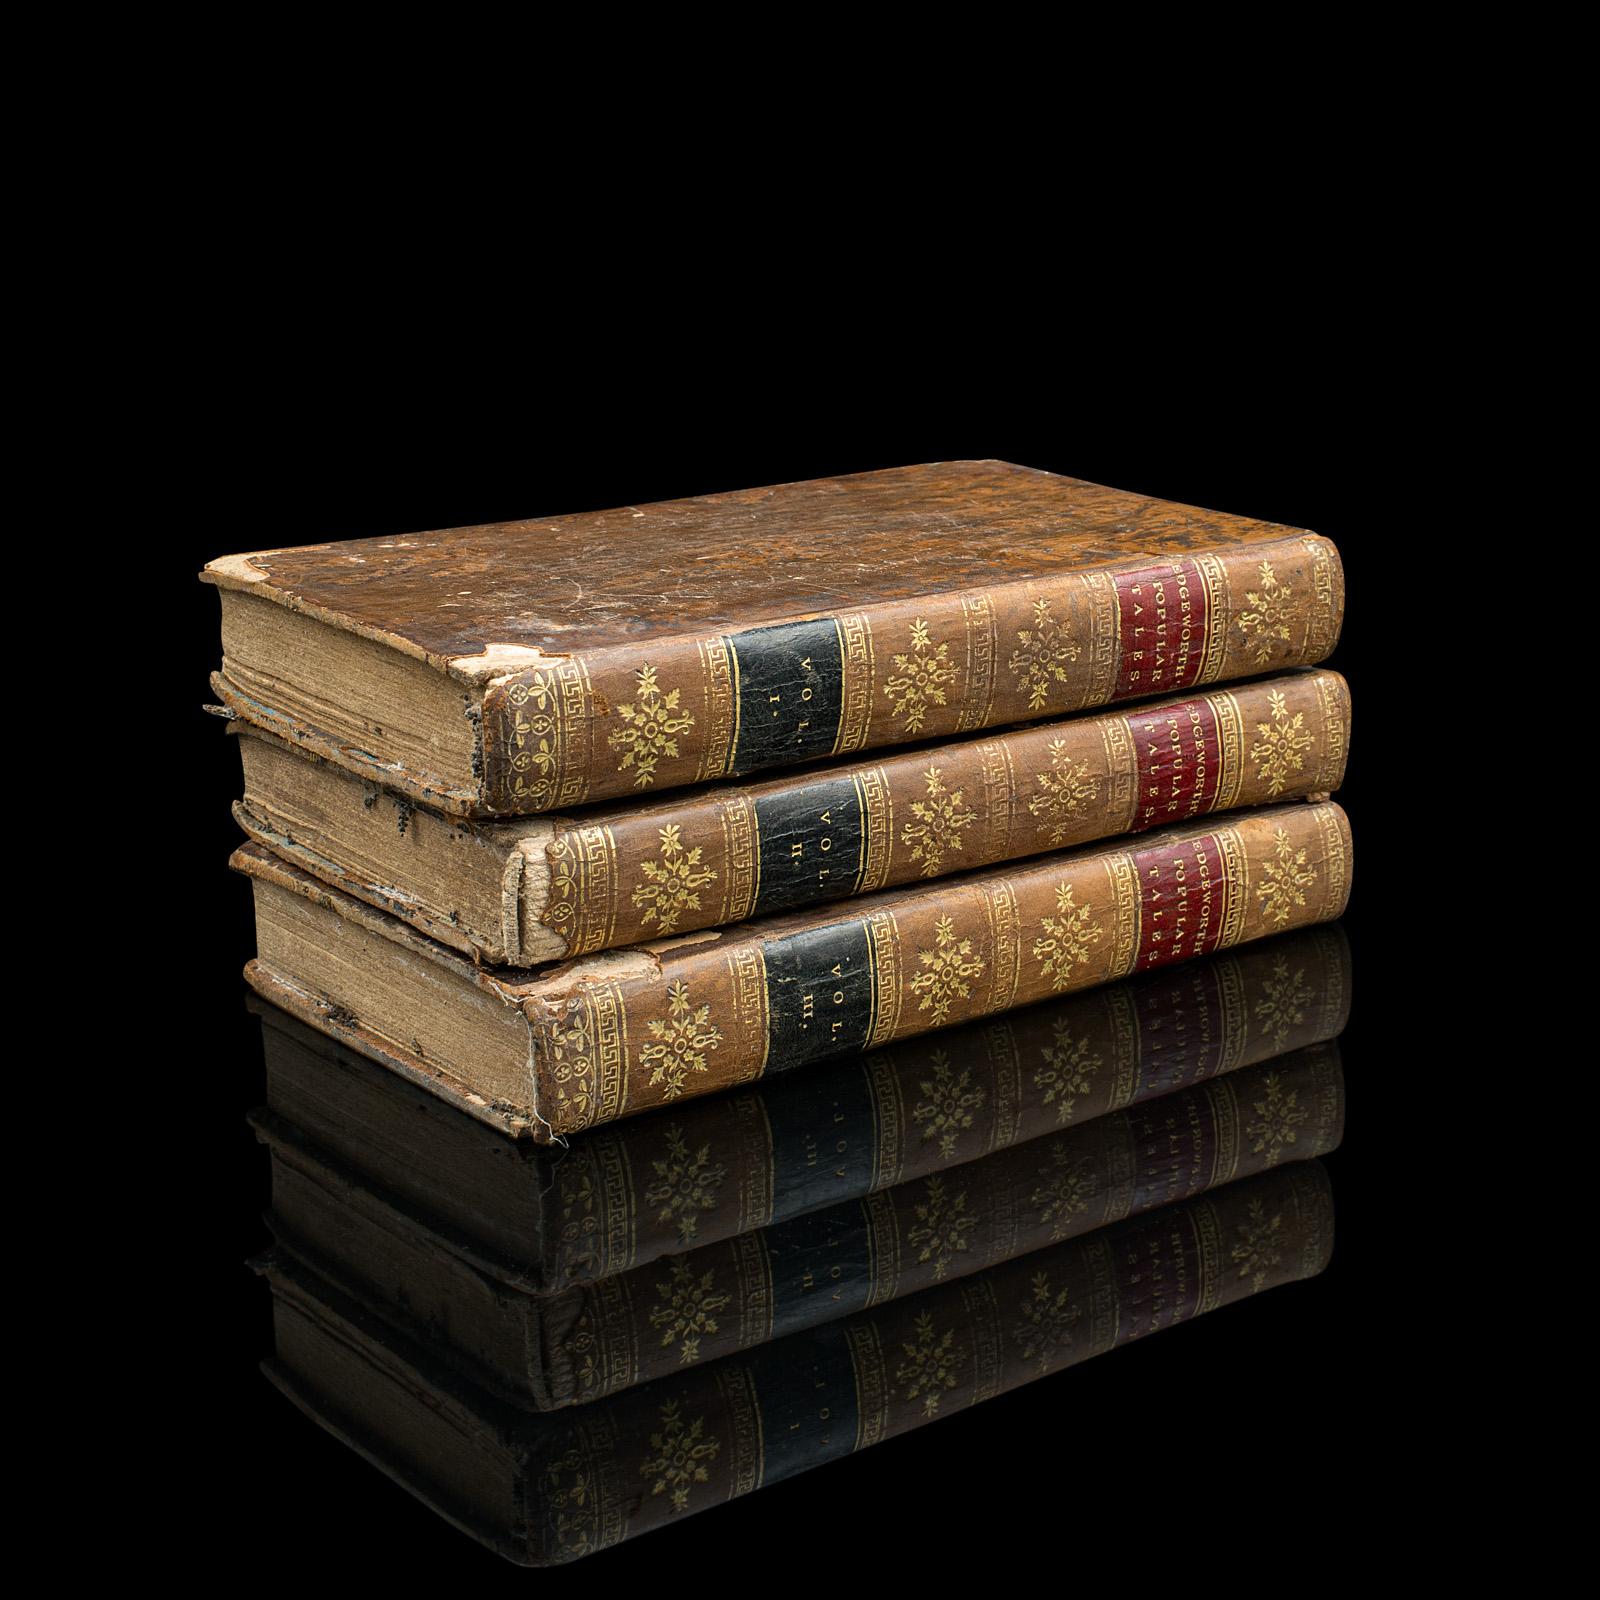 Il s'agit d'un ensemble de 3 livres de fiction anciens, Popular Tales de Maria Edgeworth. Un ensemble de 3 volumes de romans en langue anglaise, relié, datant de la période géorgienne, publié en 1814.

Romancière prolifique de littérature pour